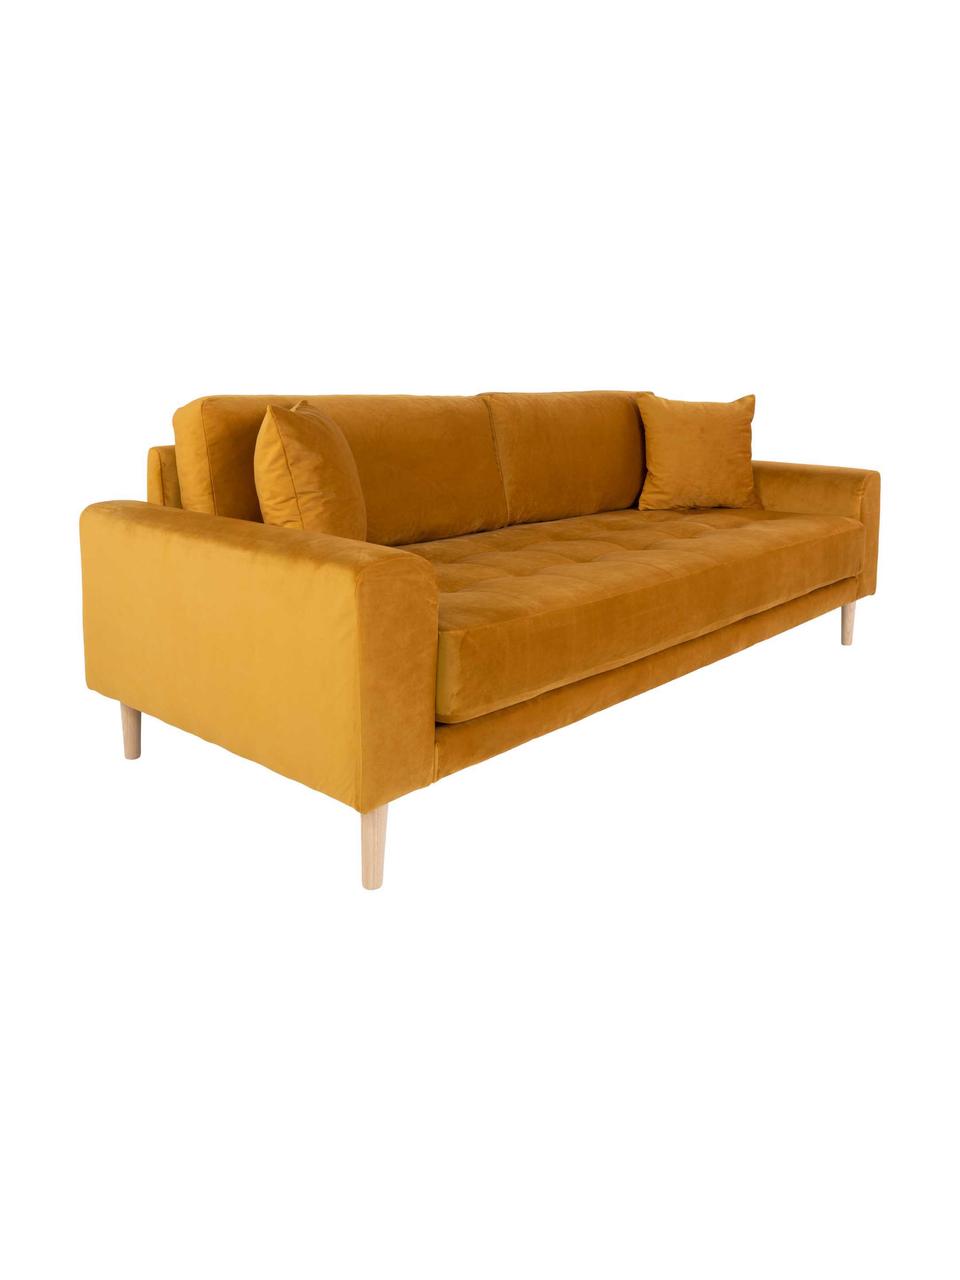 Sofa z aksamitu Andrew (3-osobowa), Tapicerka: aksamit poliestrowy 30 00, Nogi: drewno jodłowe, Musztardowy, S 210 x G 93 cm